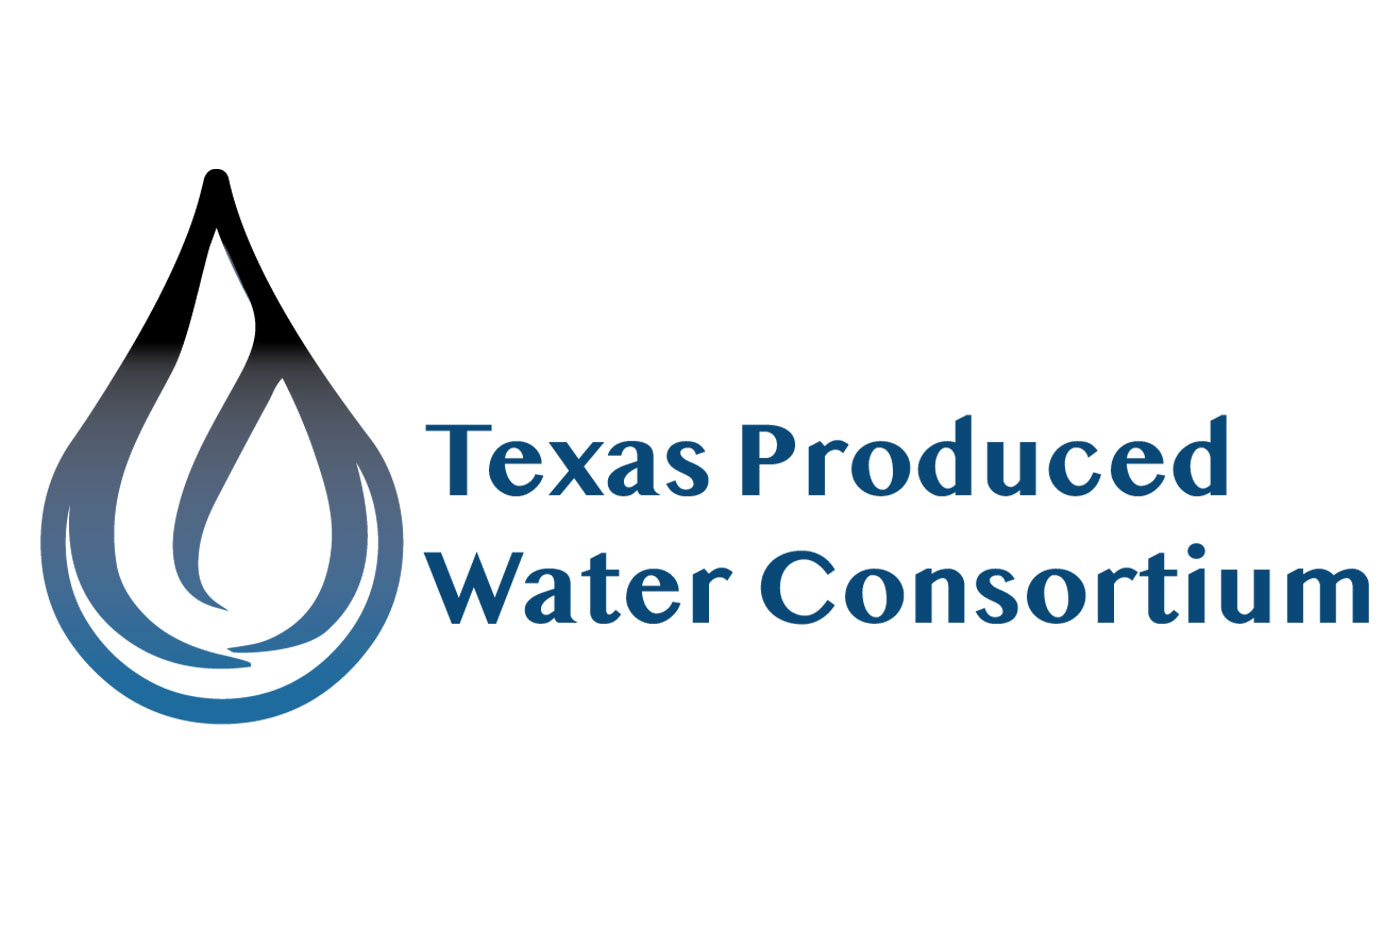 Texas Produced Water Consortium logo